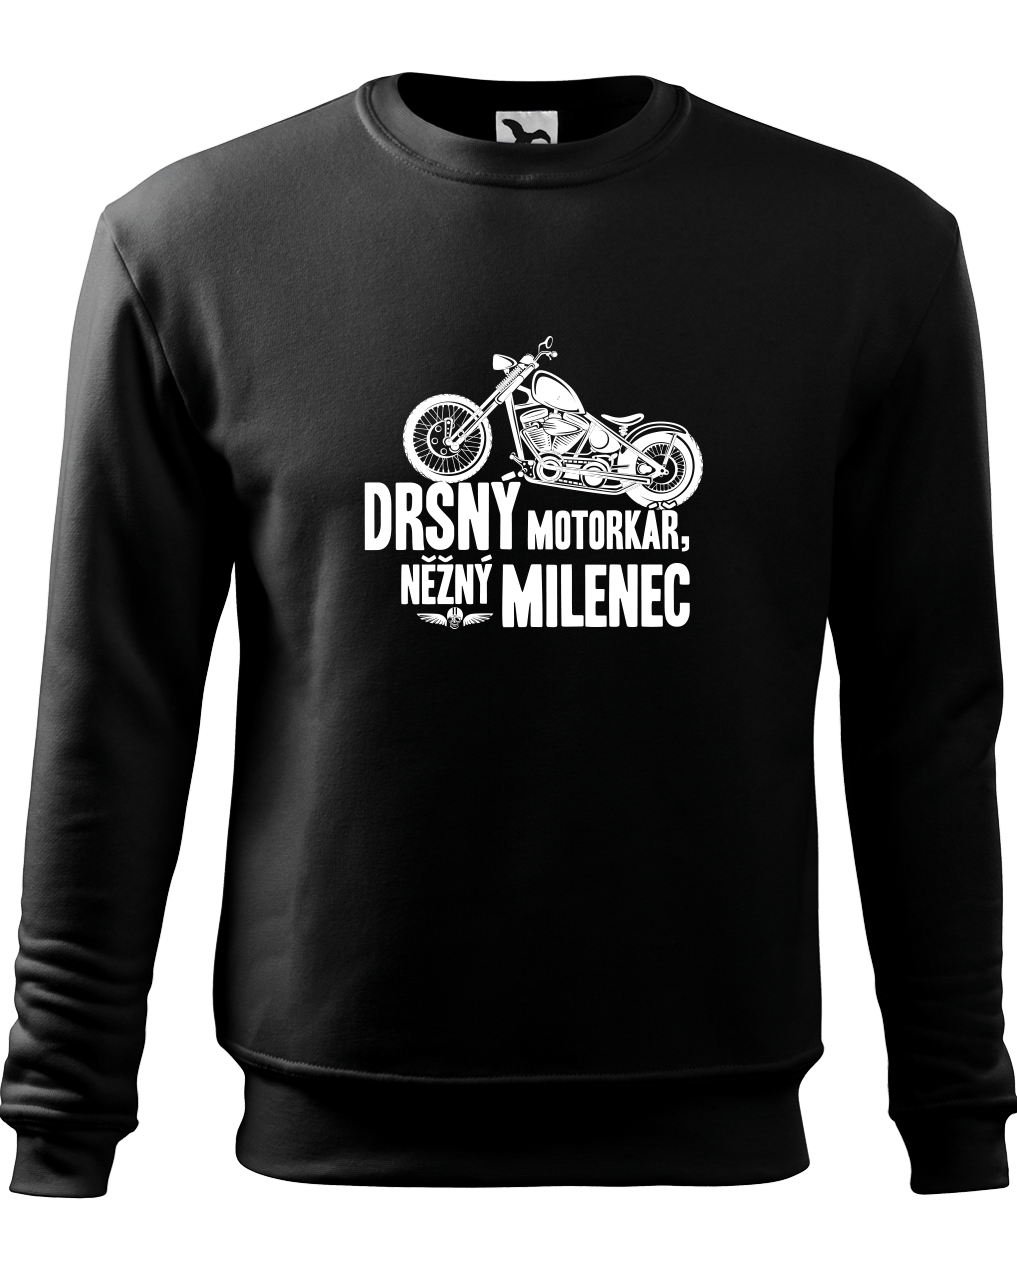 Moto mikina - Drsný motorkář, něžný milenec Velikost: XL, Barva: Černá